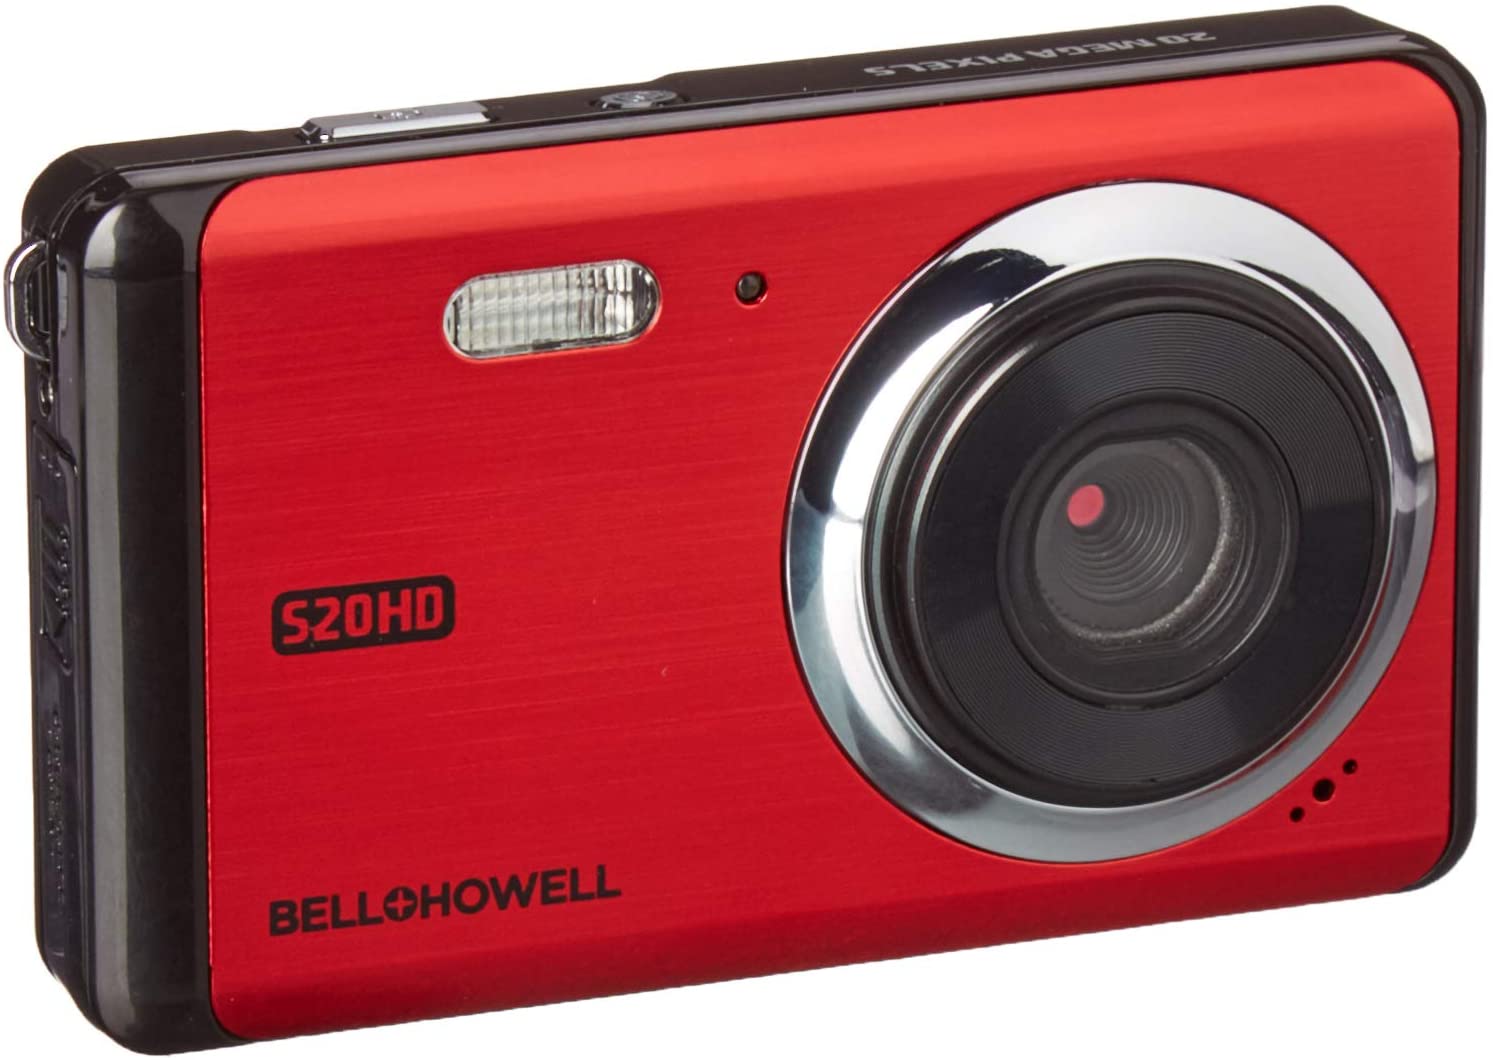 Bell + Howell (R) s20hd-r 20-megapixel s20hd HD 1080P cÃ¡mara digital (Rojo)